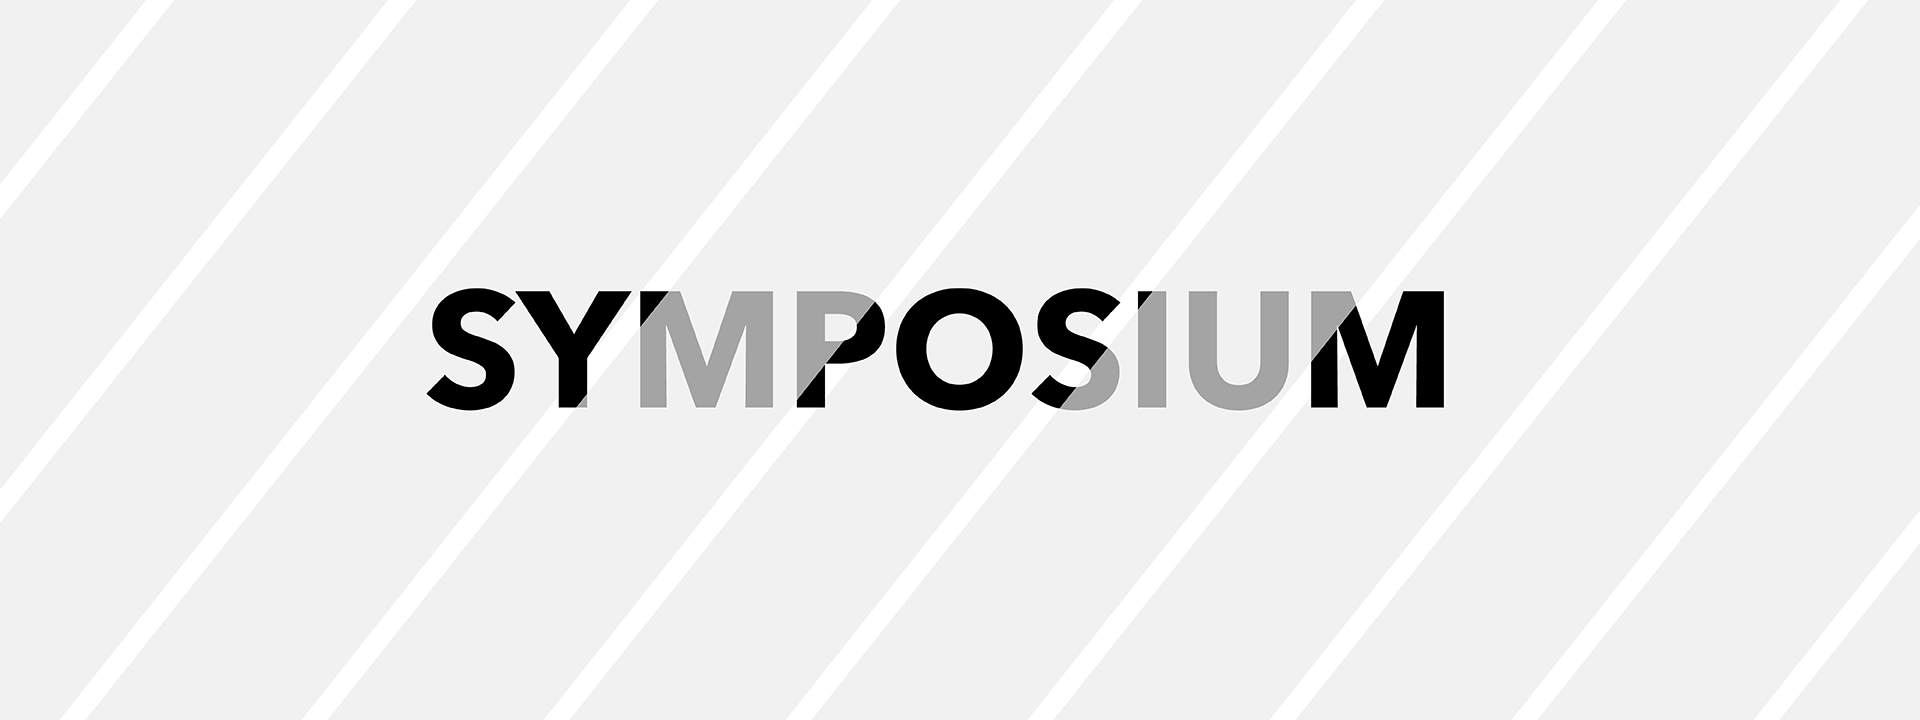 symposium-s0